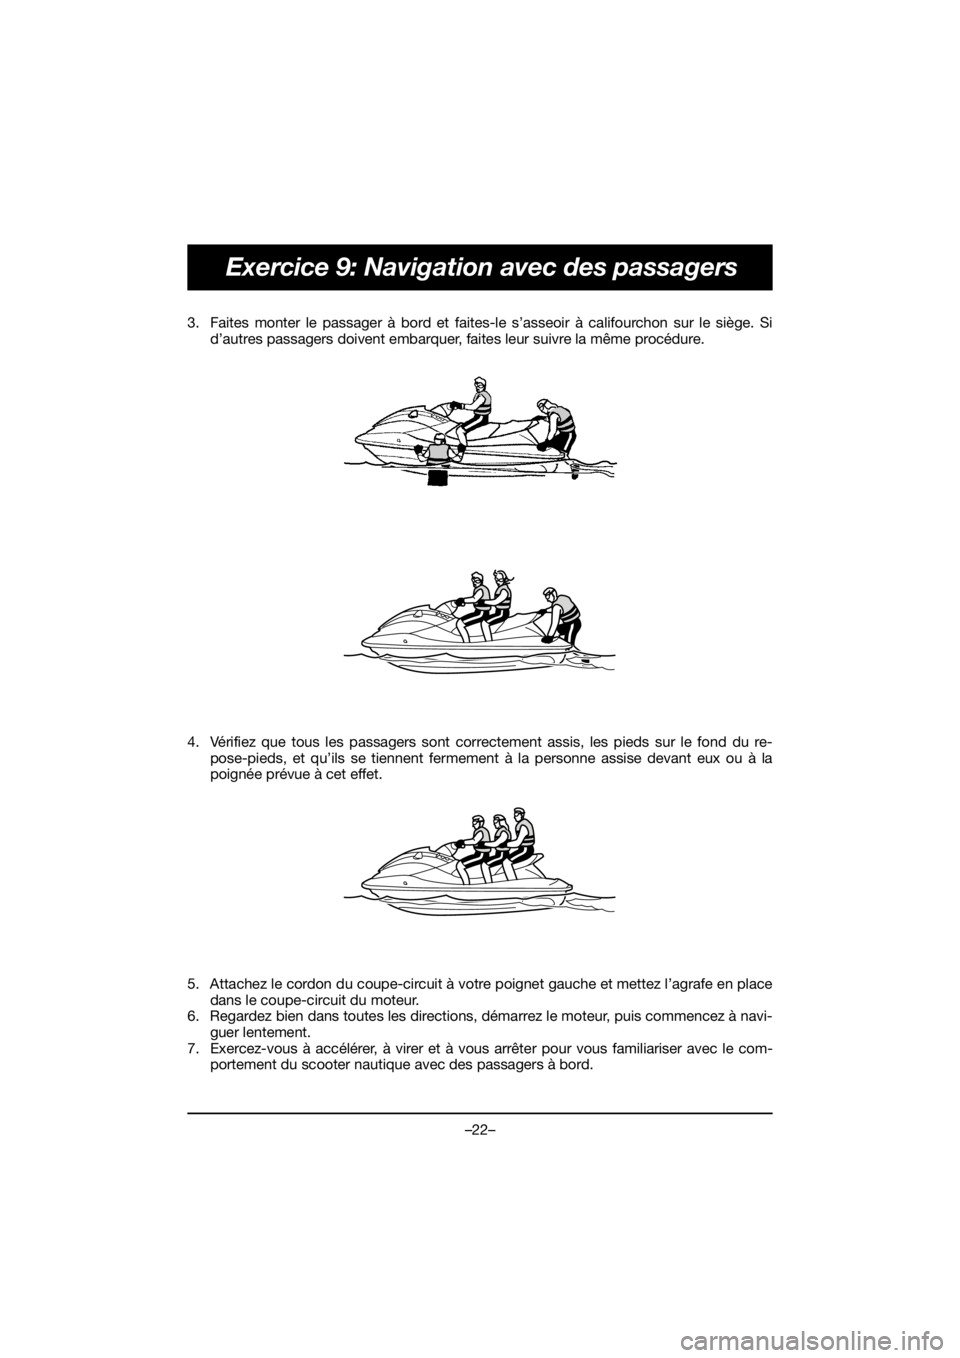 YAMAHA EX SPORT 2019  Owners Manual –22–
Exercice 9: Navigation avec des passagers
3. Faites monter le passager à bord et faites-le s’asseoir à califourchon sur le siège. Si
d’autres passagers doivent embarquer, faites leur s